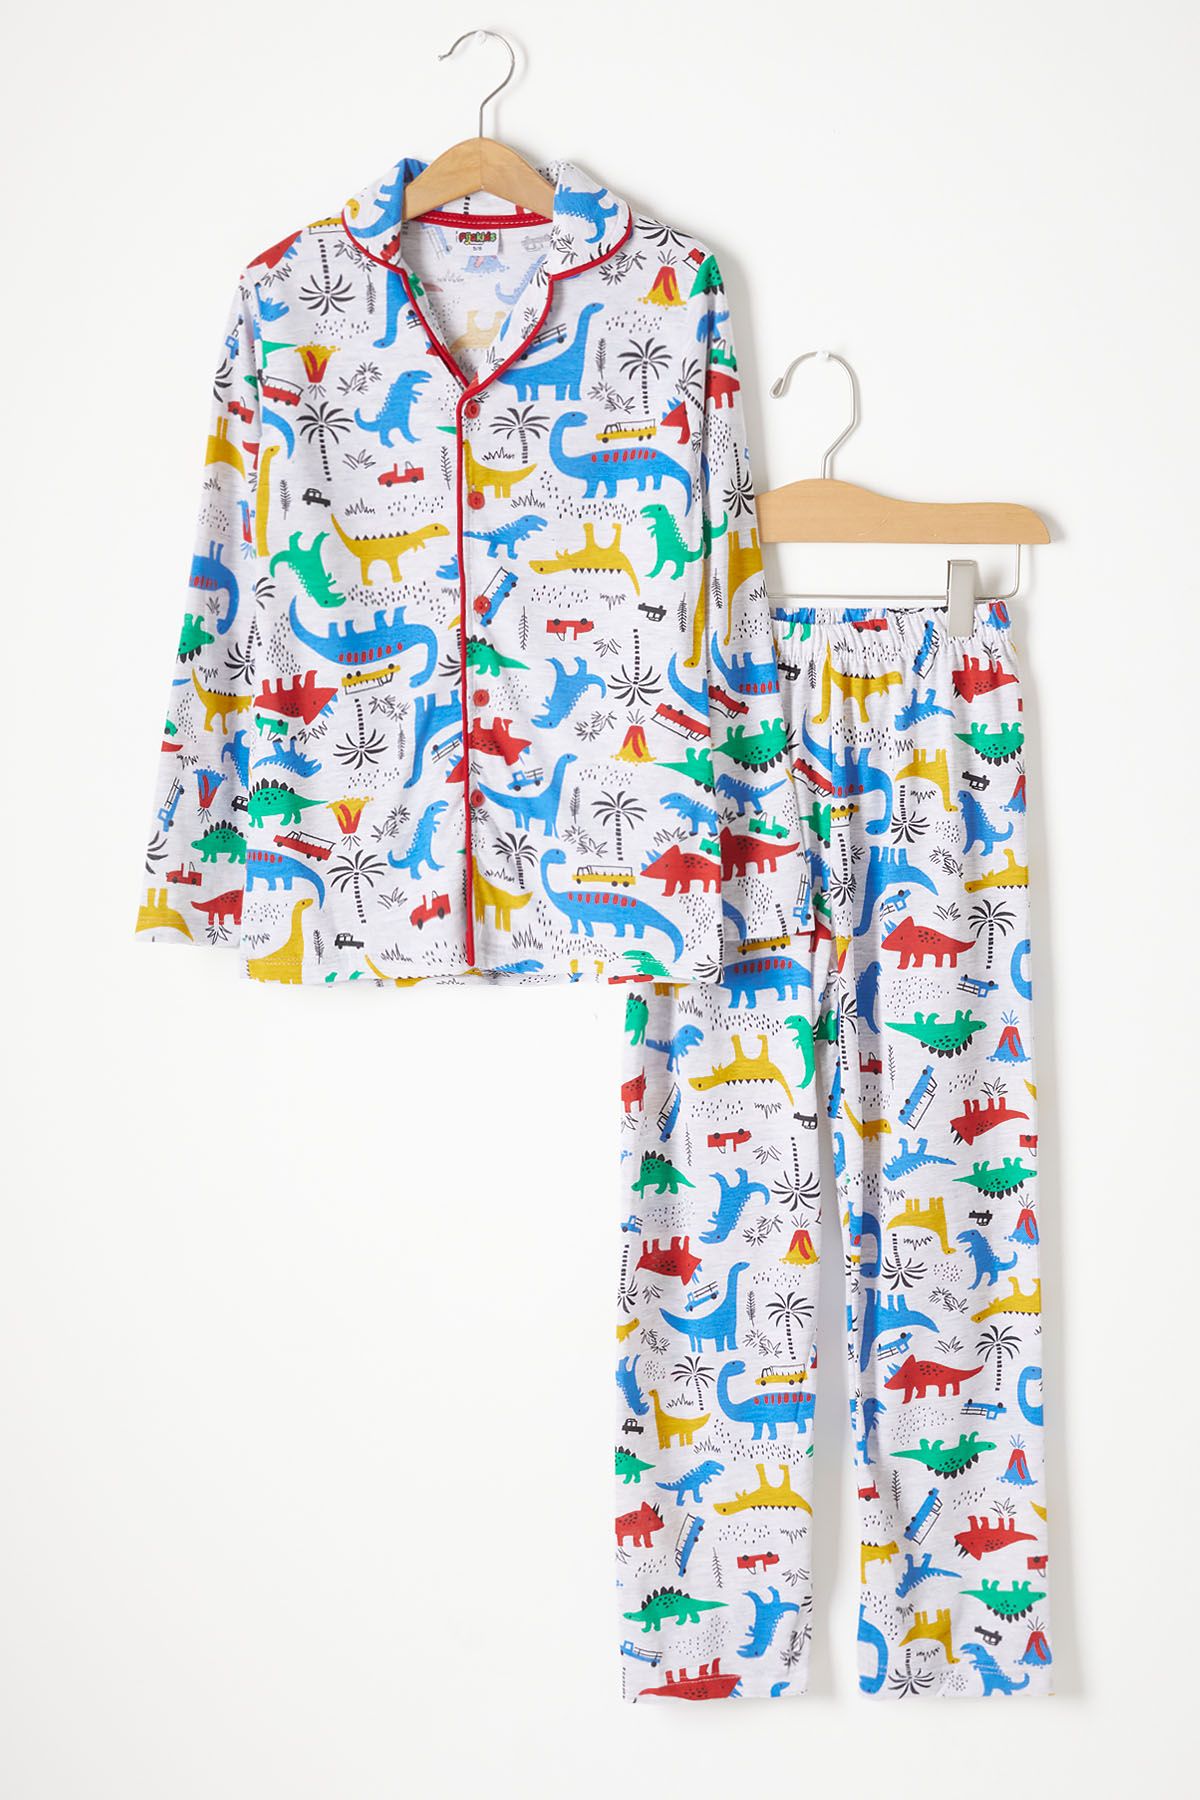 Cansın Mini Dinozor Desenli Erkek Çocuk Pijama Takımı 16327